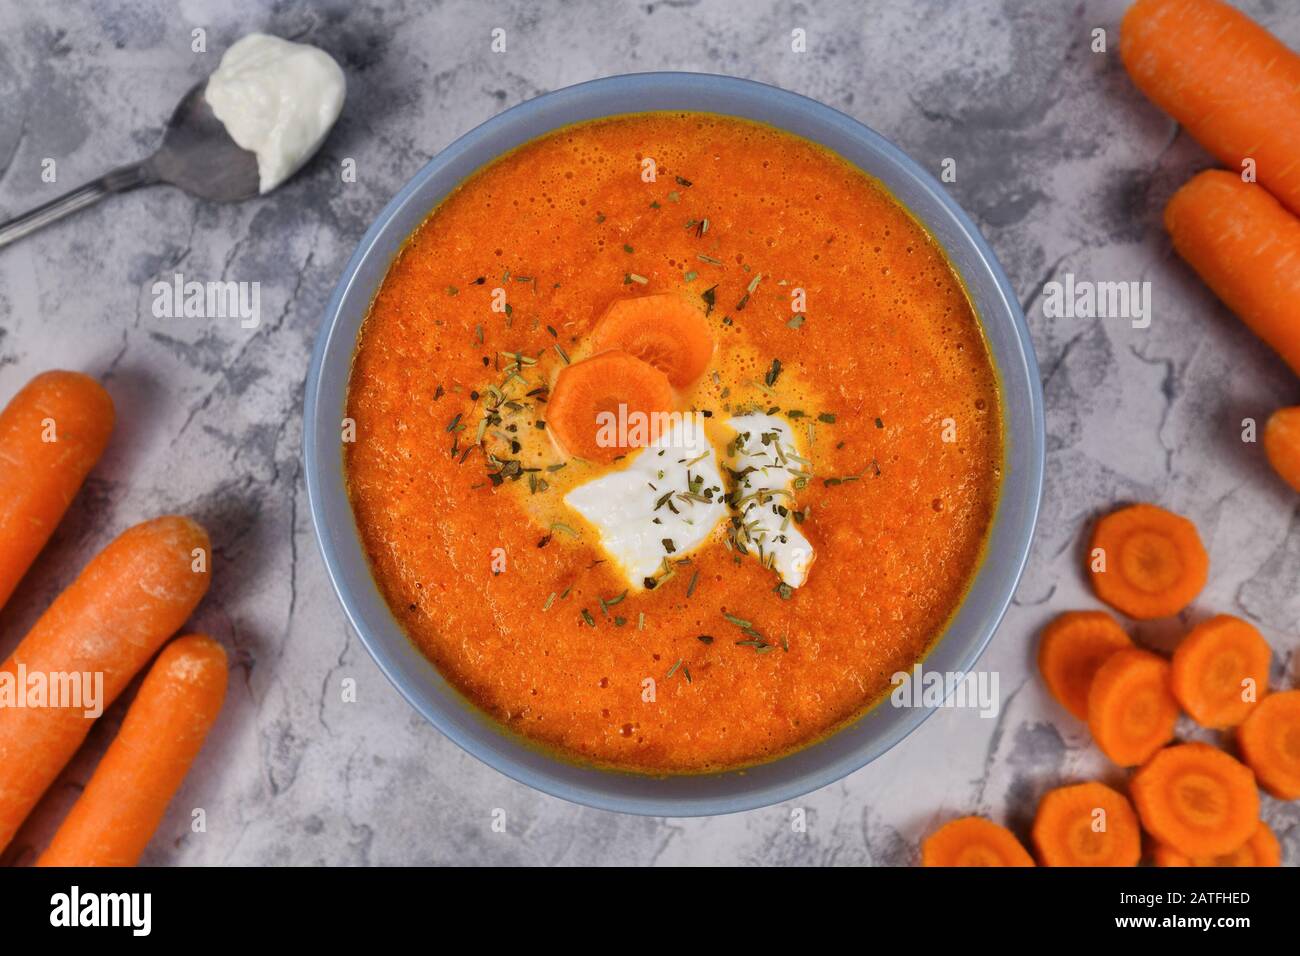 Soupe saine aux carottes végétales avec peu de calories pour la diète dans un bol gris Banque D'Images